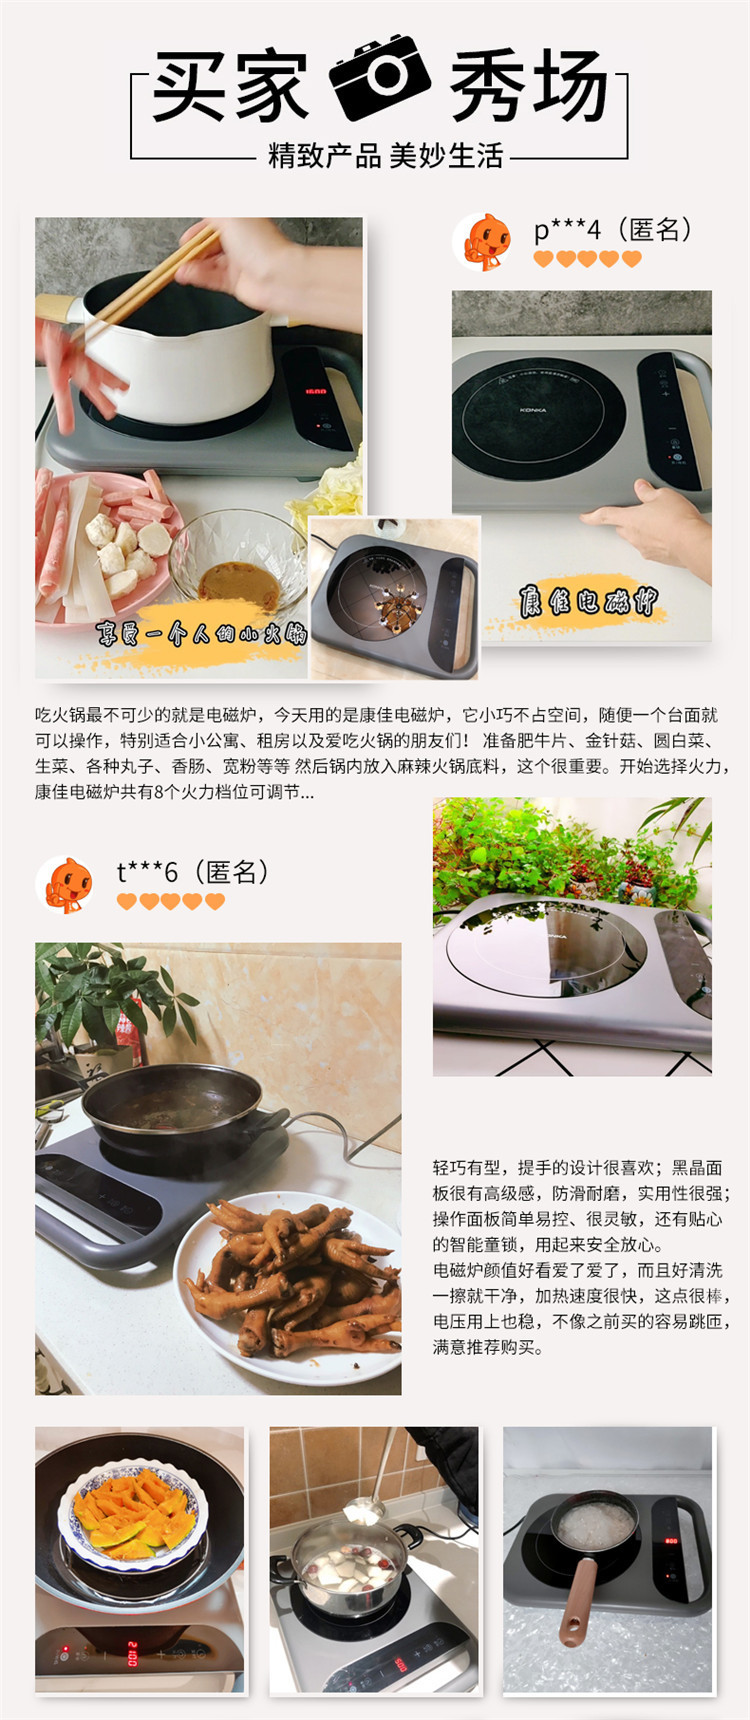 康佳/KONKA 家用电磁炉锅多功能一体小型炒菜节能爆炒蒸煮便携迷你电磁炉